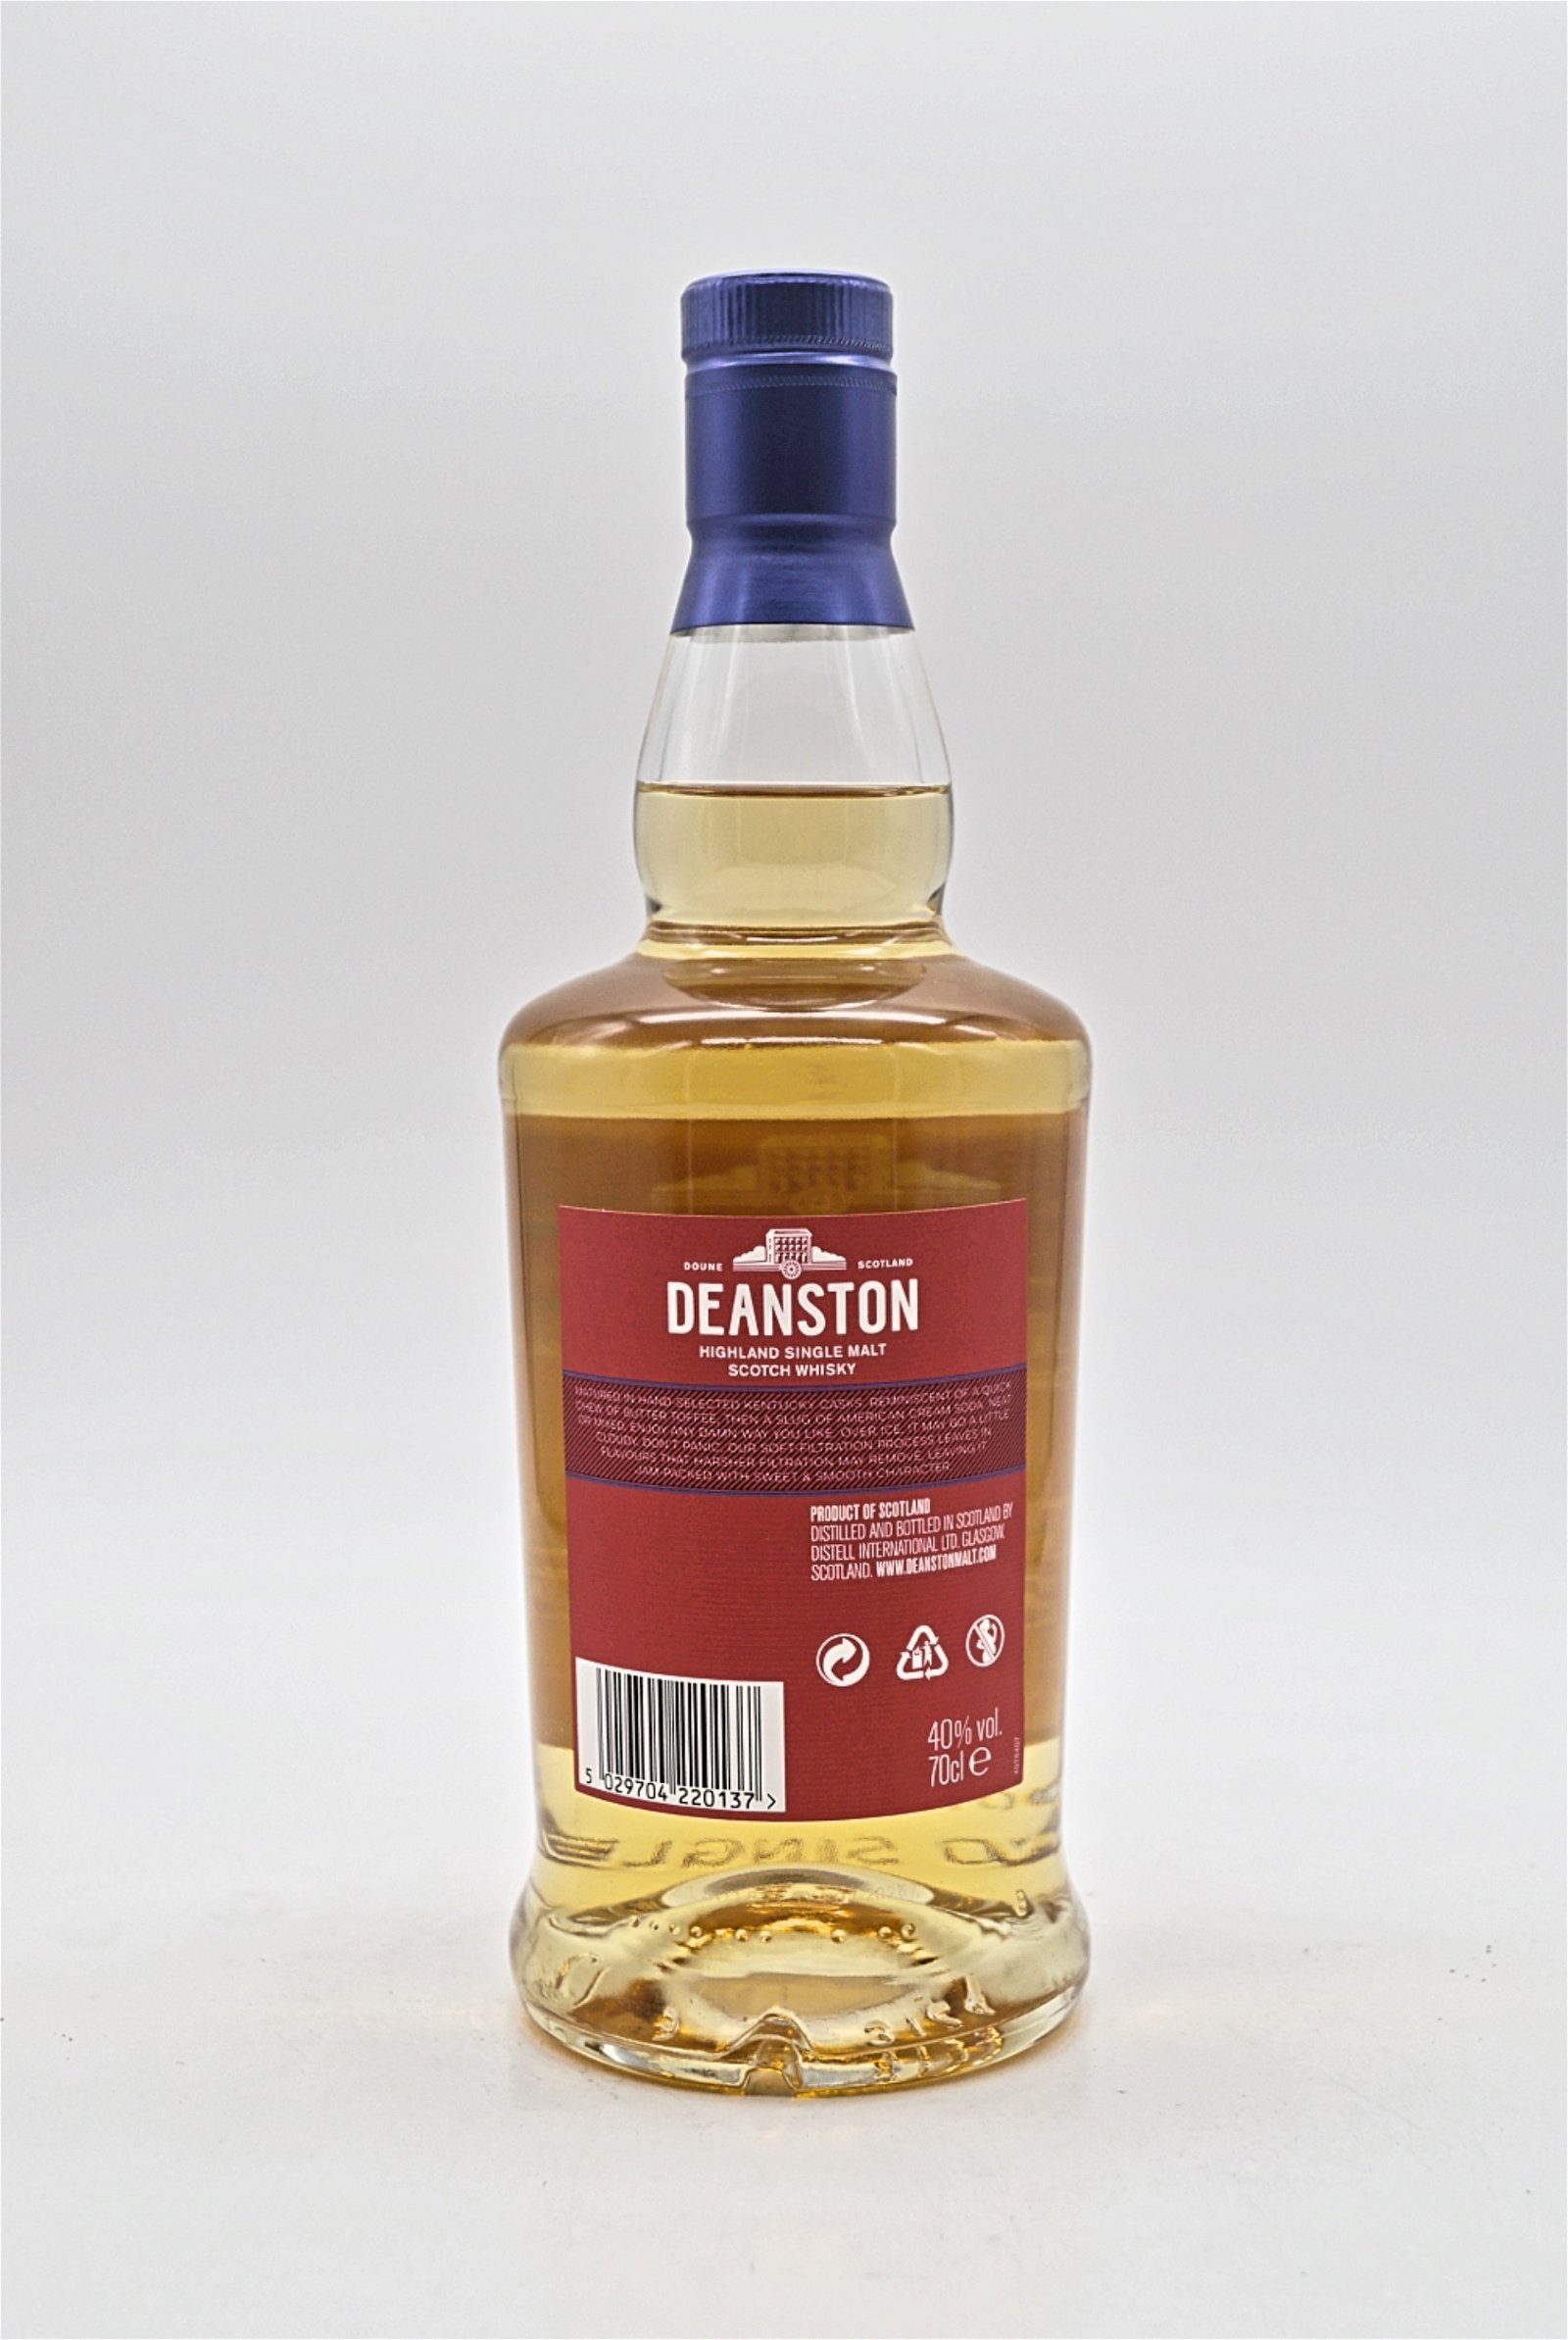 Deanston Kentucky Cask Matured Highland Single Malt Scotch Whisky